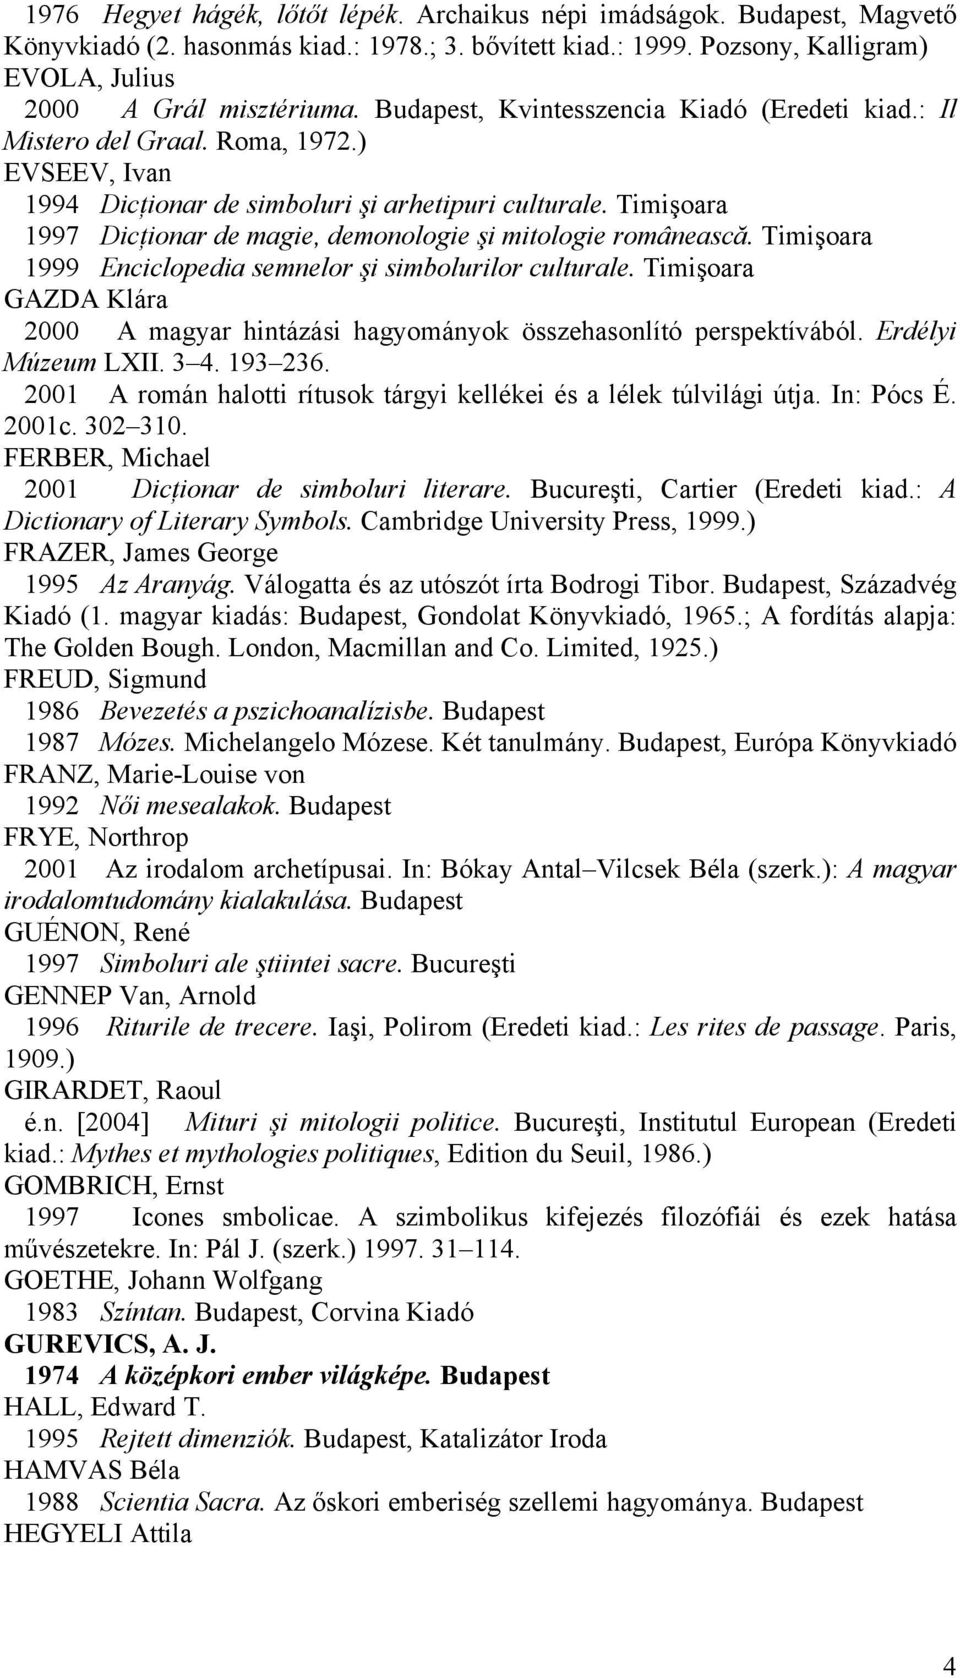 Timişoara 1997 Dicţionar de magie, demonologie şi mitologie românească. Timişoara 1999 Enciclopedia semnelor şi simbolurilor culturale.